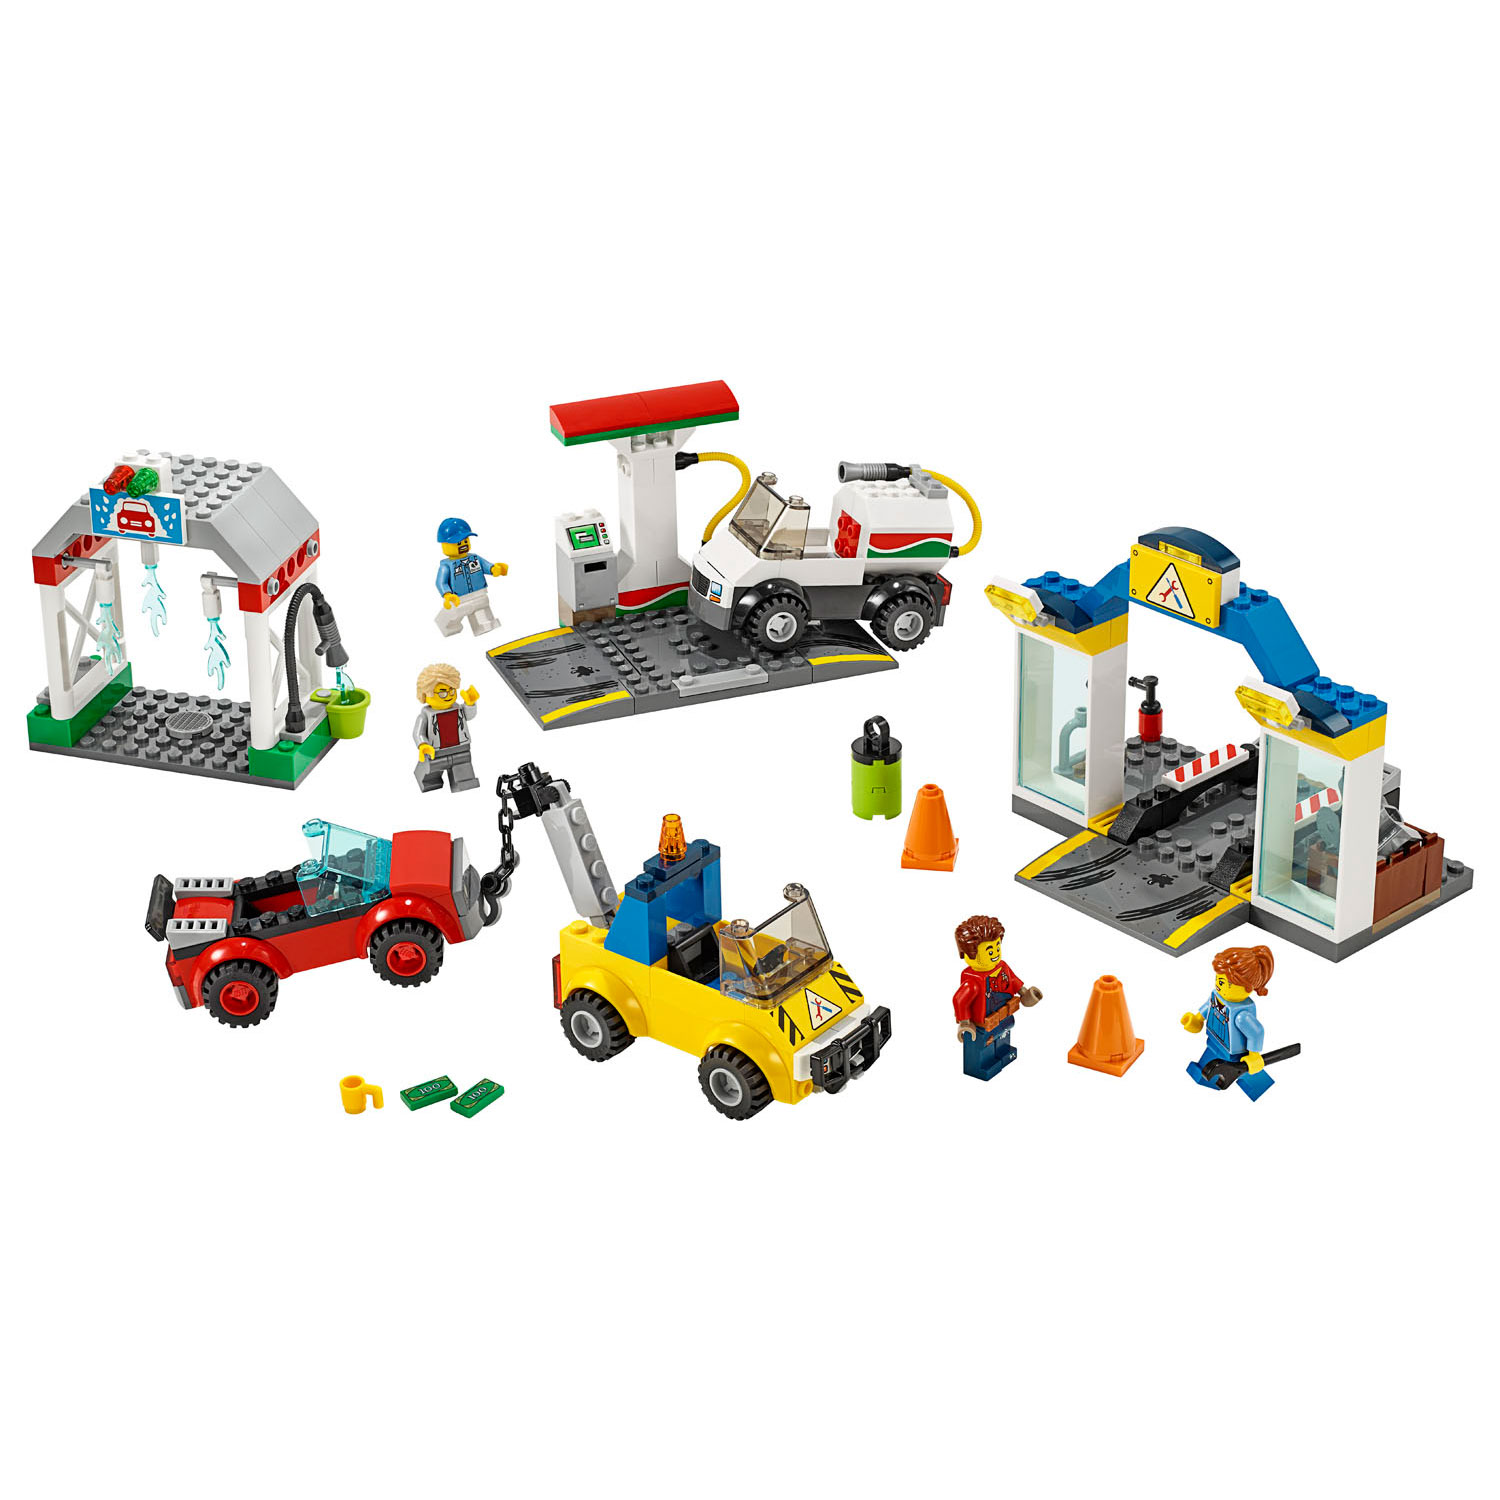 LEGO City Town 60232 Garage